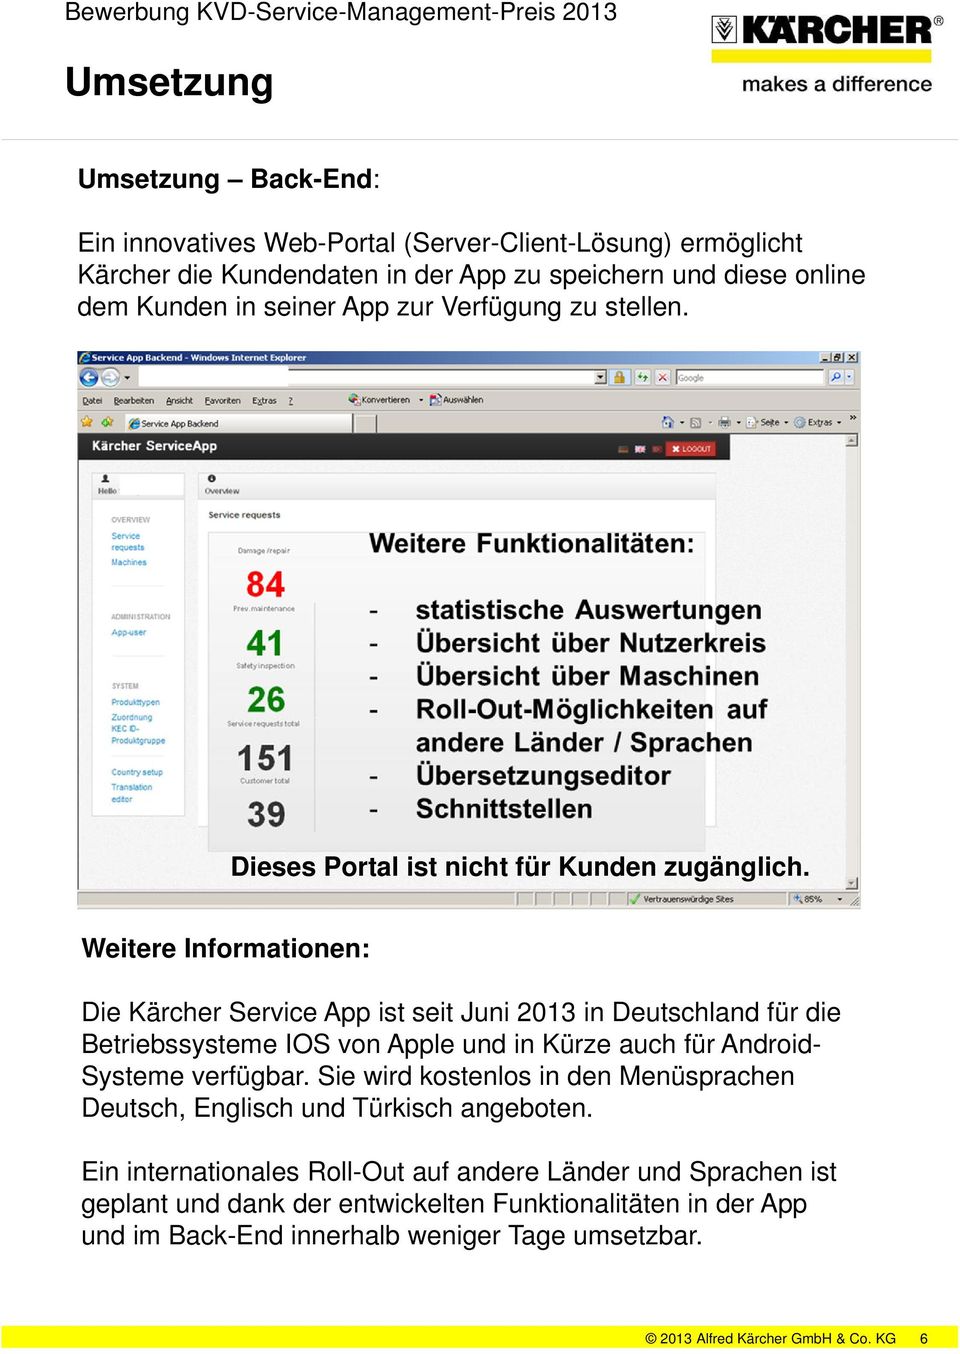 Weitere Informationen: Die Kärcher Service App ist seit Juni 2013 in Deutschland für die Betriebssysteme IOS von Apple und in Kürze auch für Android- Systeme verfügbar.